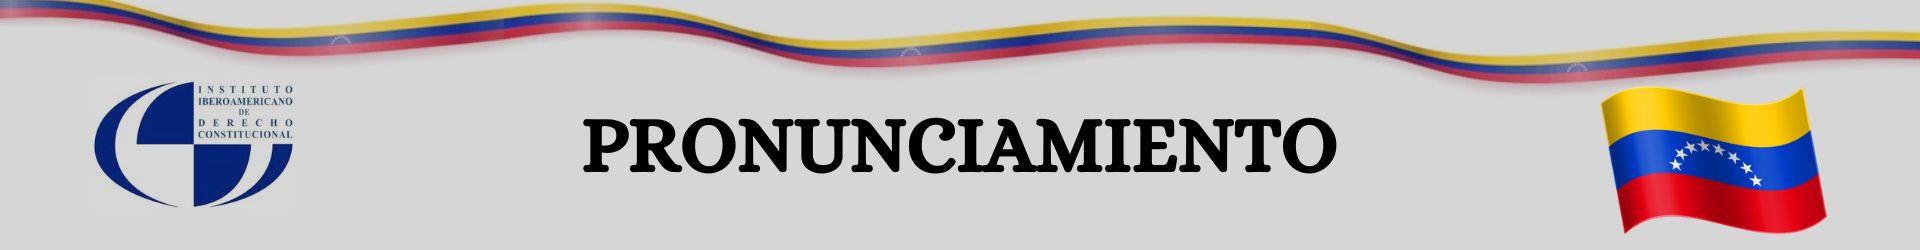 Pronunciamiento del Instituto Iberoamericano de Derecho Constitucional respecto a los recientes acontecimientos en Venezuela